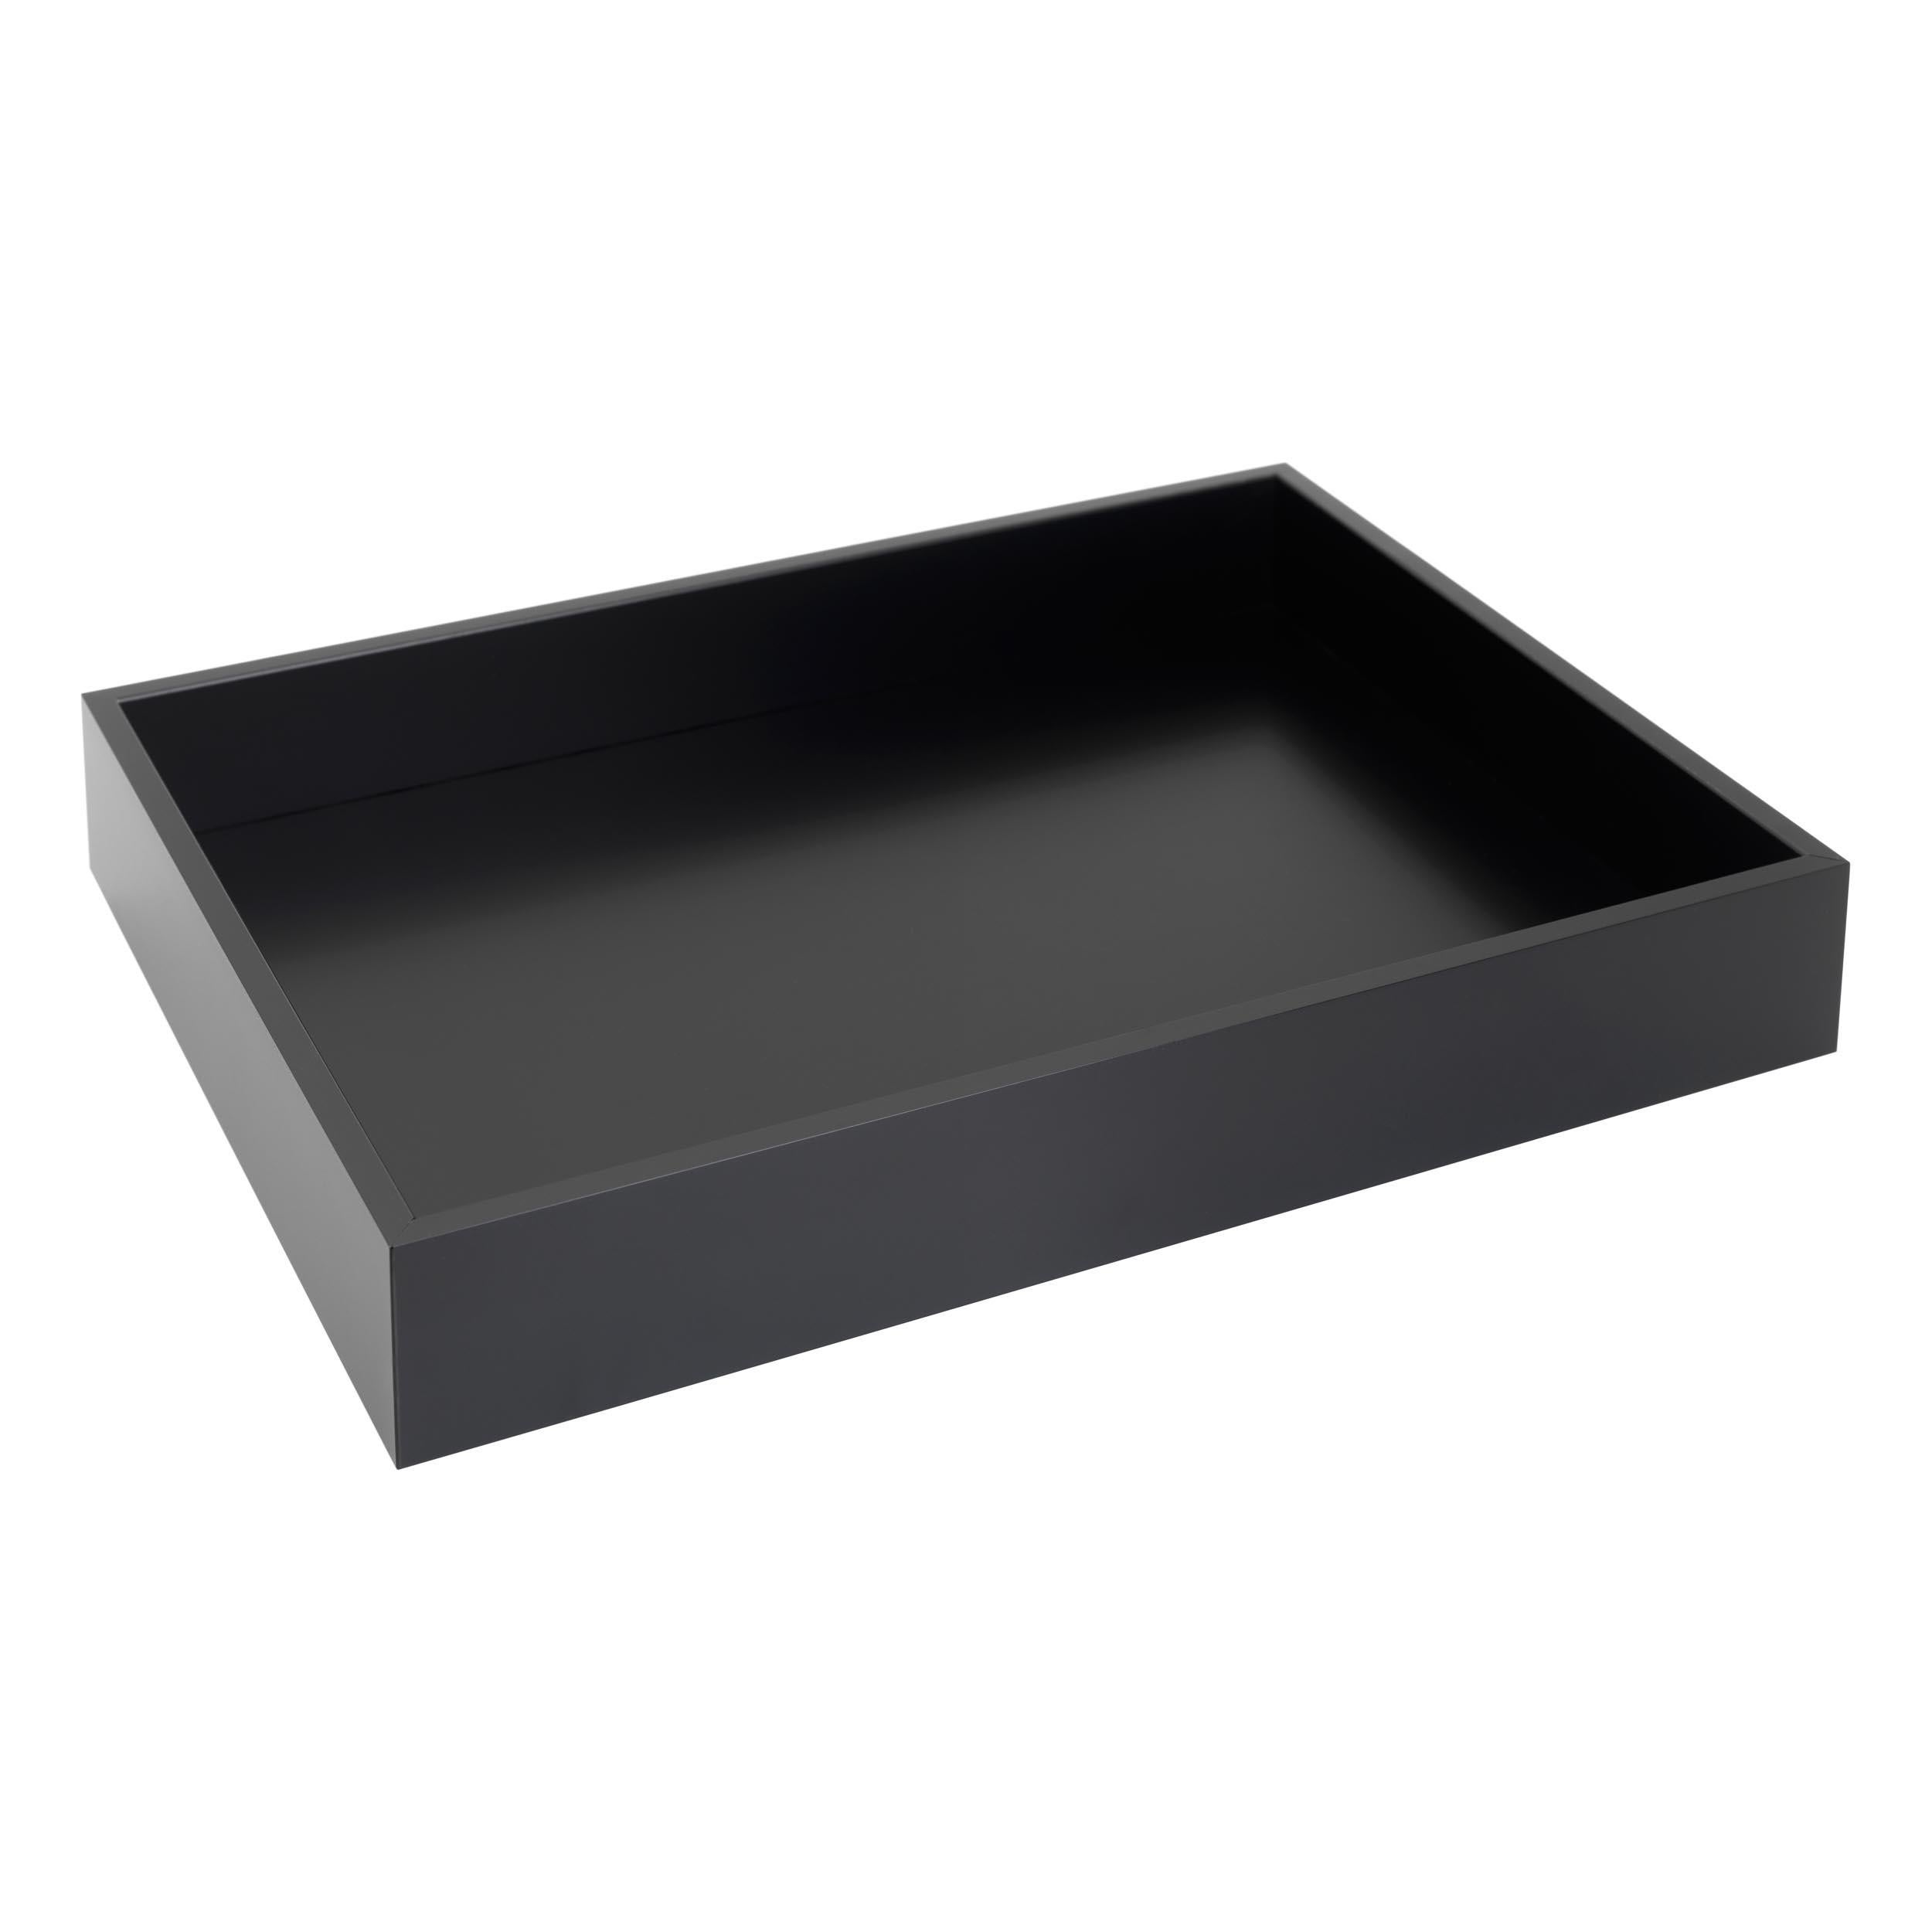 NEW Schonbuch Black Box M Tally
TALLY ist ein vielseitiges Tablett, das in einer Reihe interessanter Lackfarben und drei verschiedenen Größen erhältlich ist. Alleine oder in der Gruppe, nebeneinander oder ineinander, bietet TALLY Inspiration für